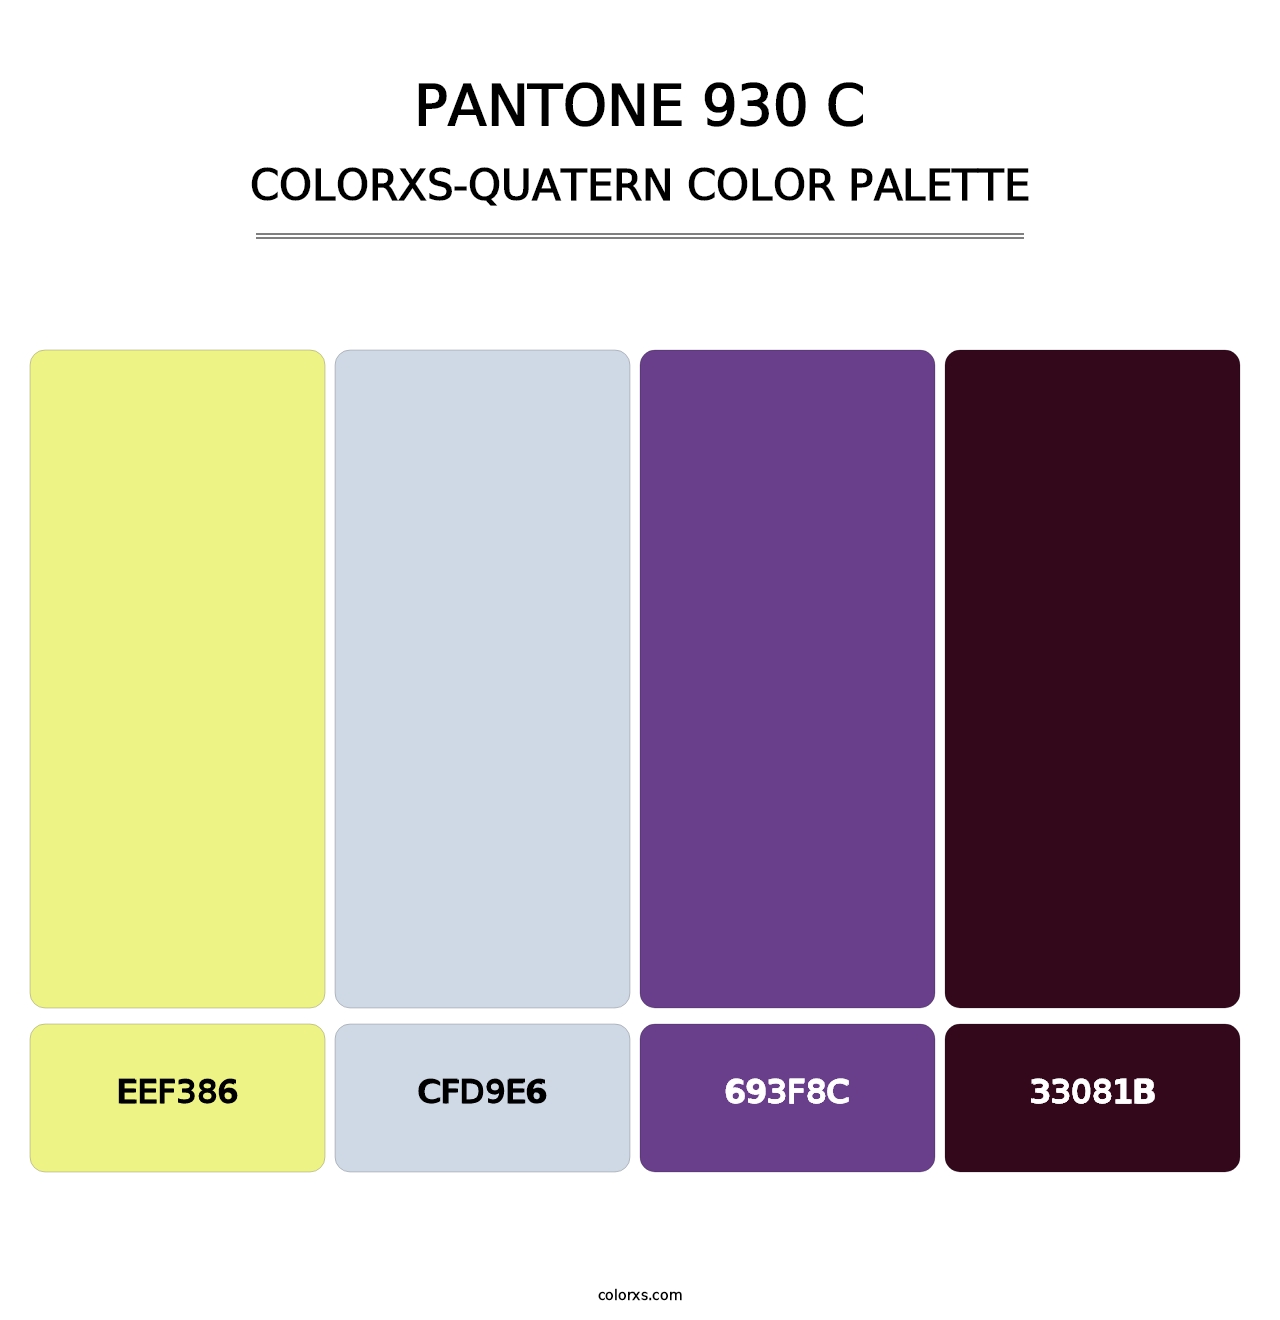 PANTONE 930 C - Colorxs Quatern Palette